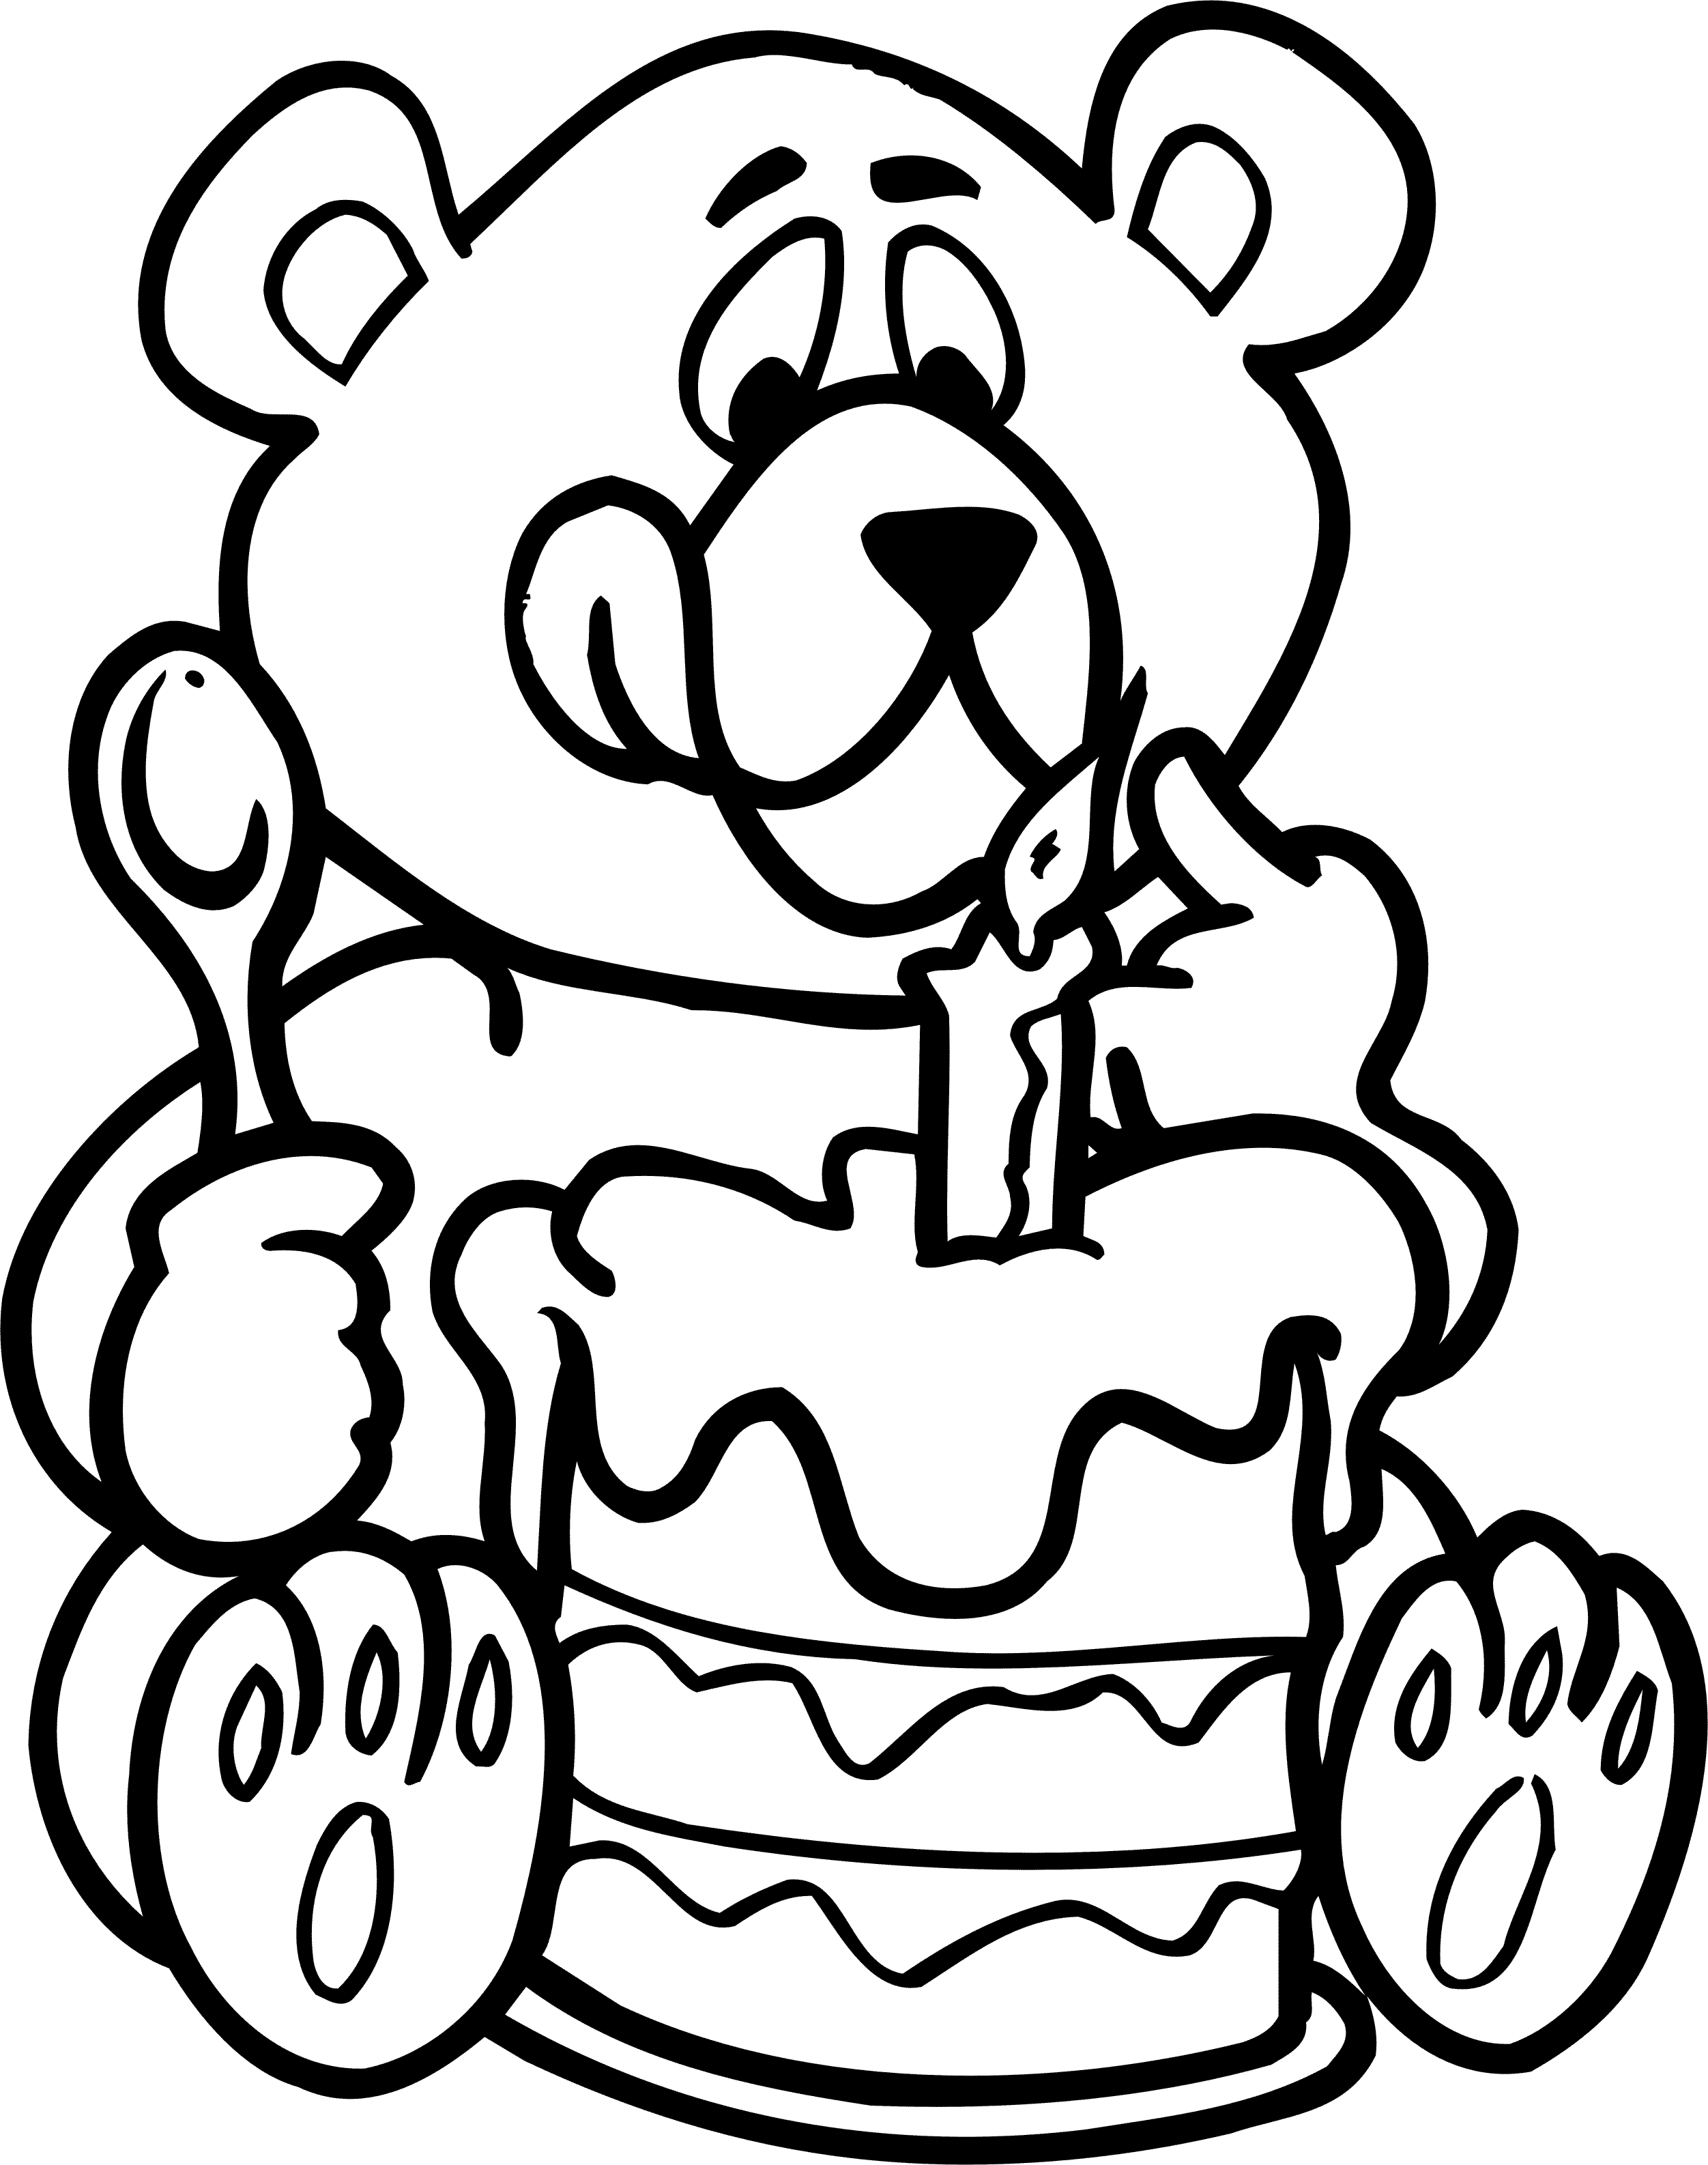 Что можно дедушке нарисовать на день рождения. Раскраска "с днем рождения!". Снём рождения раскраска. Ра краска с днем рождения. День рождения ИА раскраски.